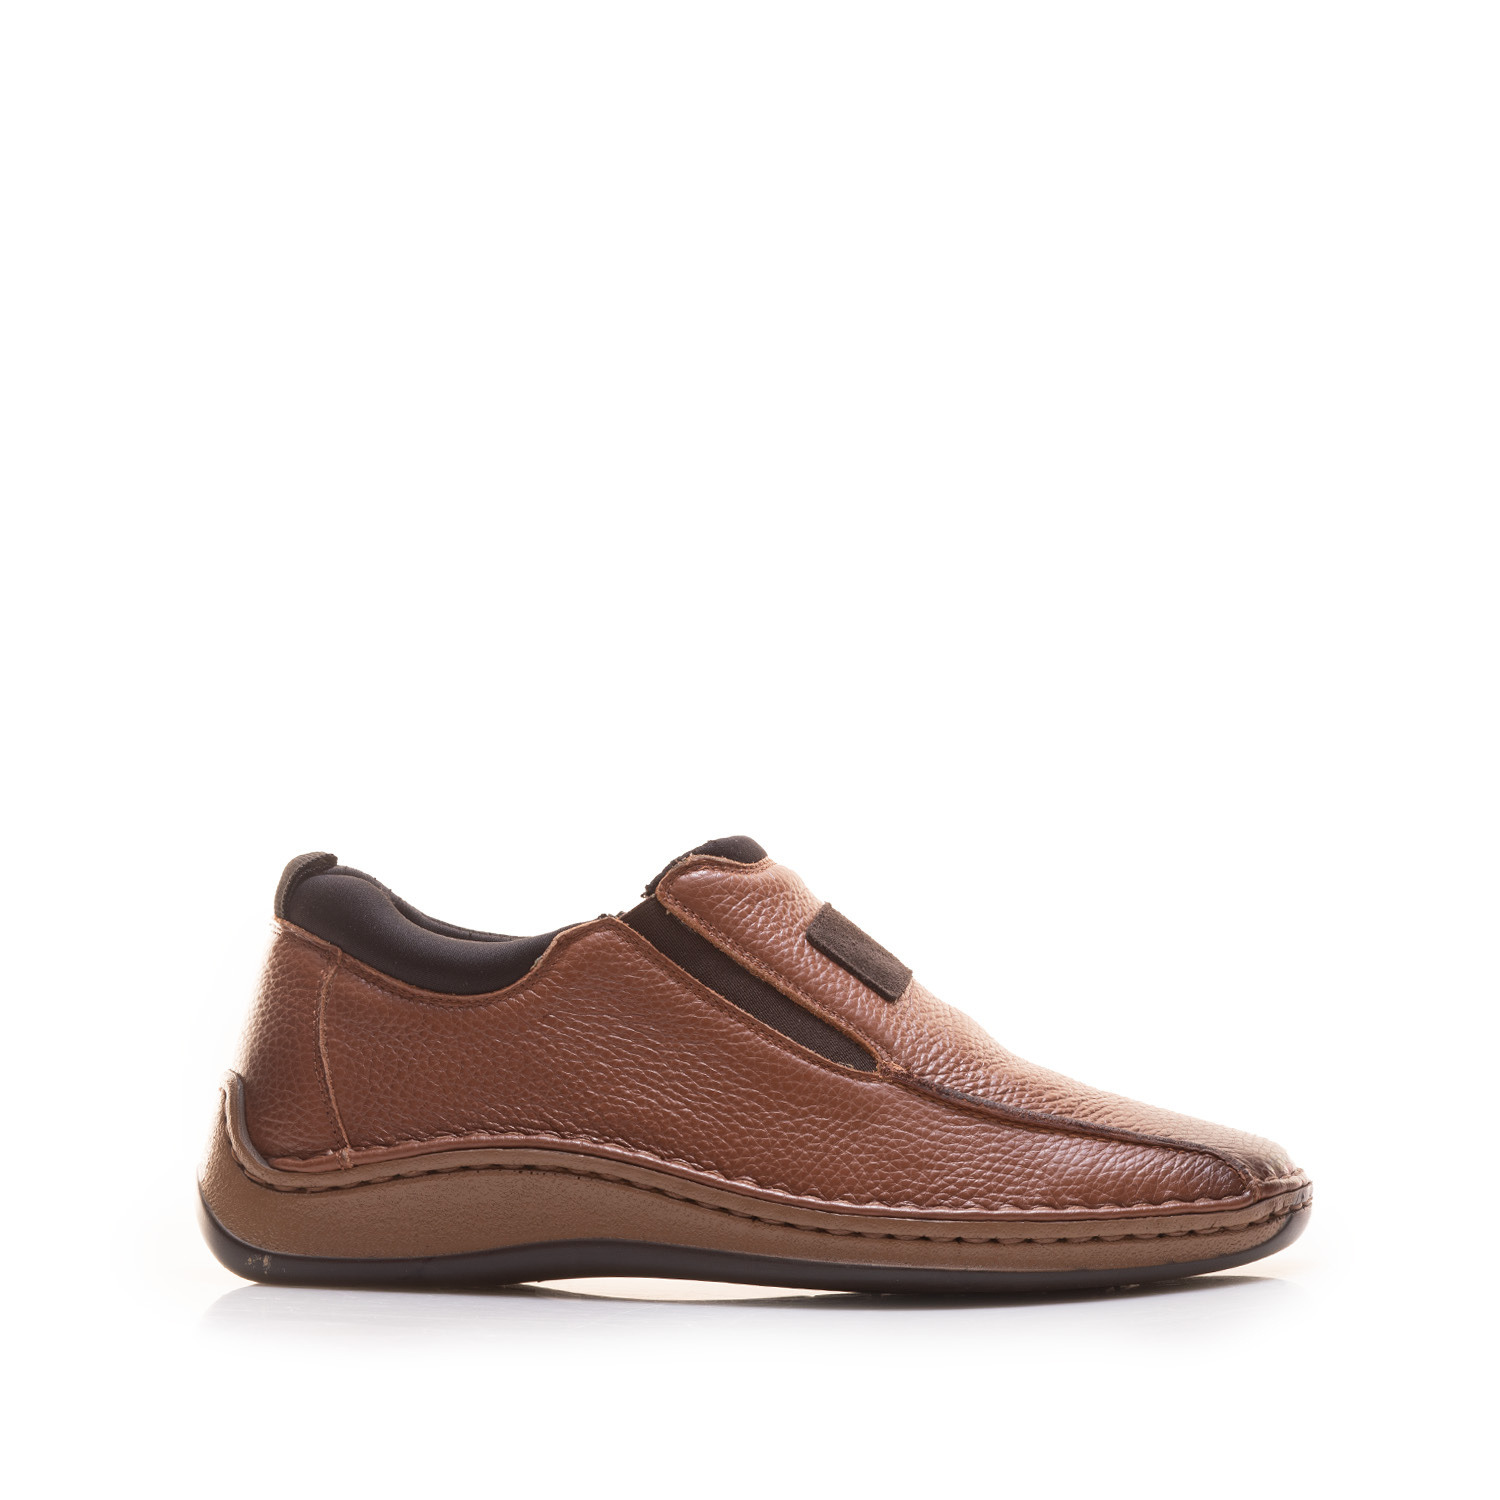 Pantofi casual bărbați din piele naturală, Leofex - 978 Cognac Box Presat